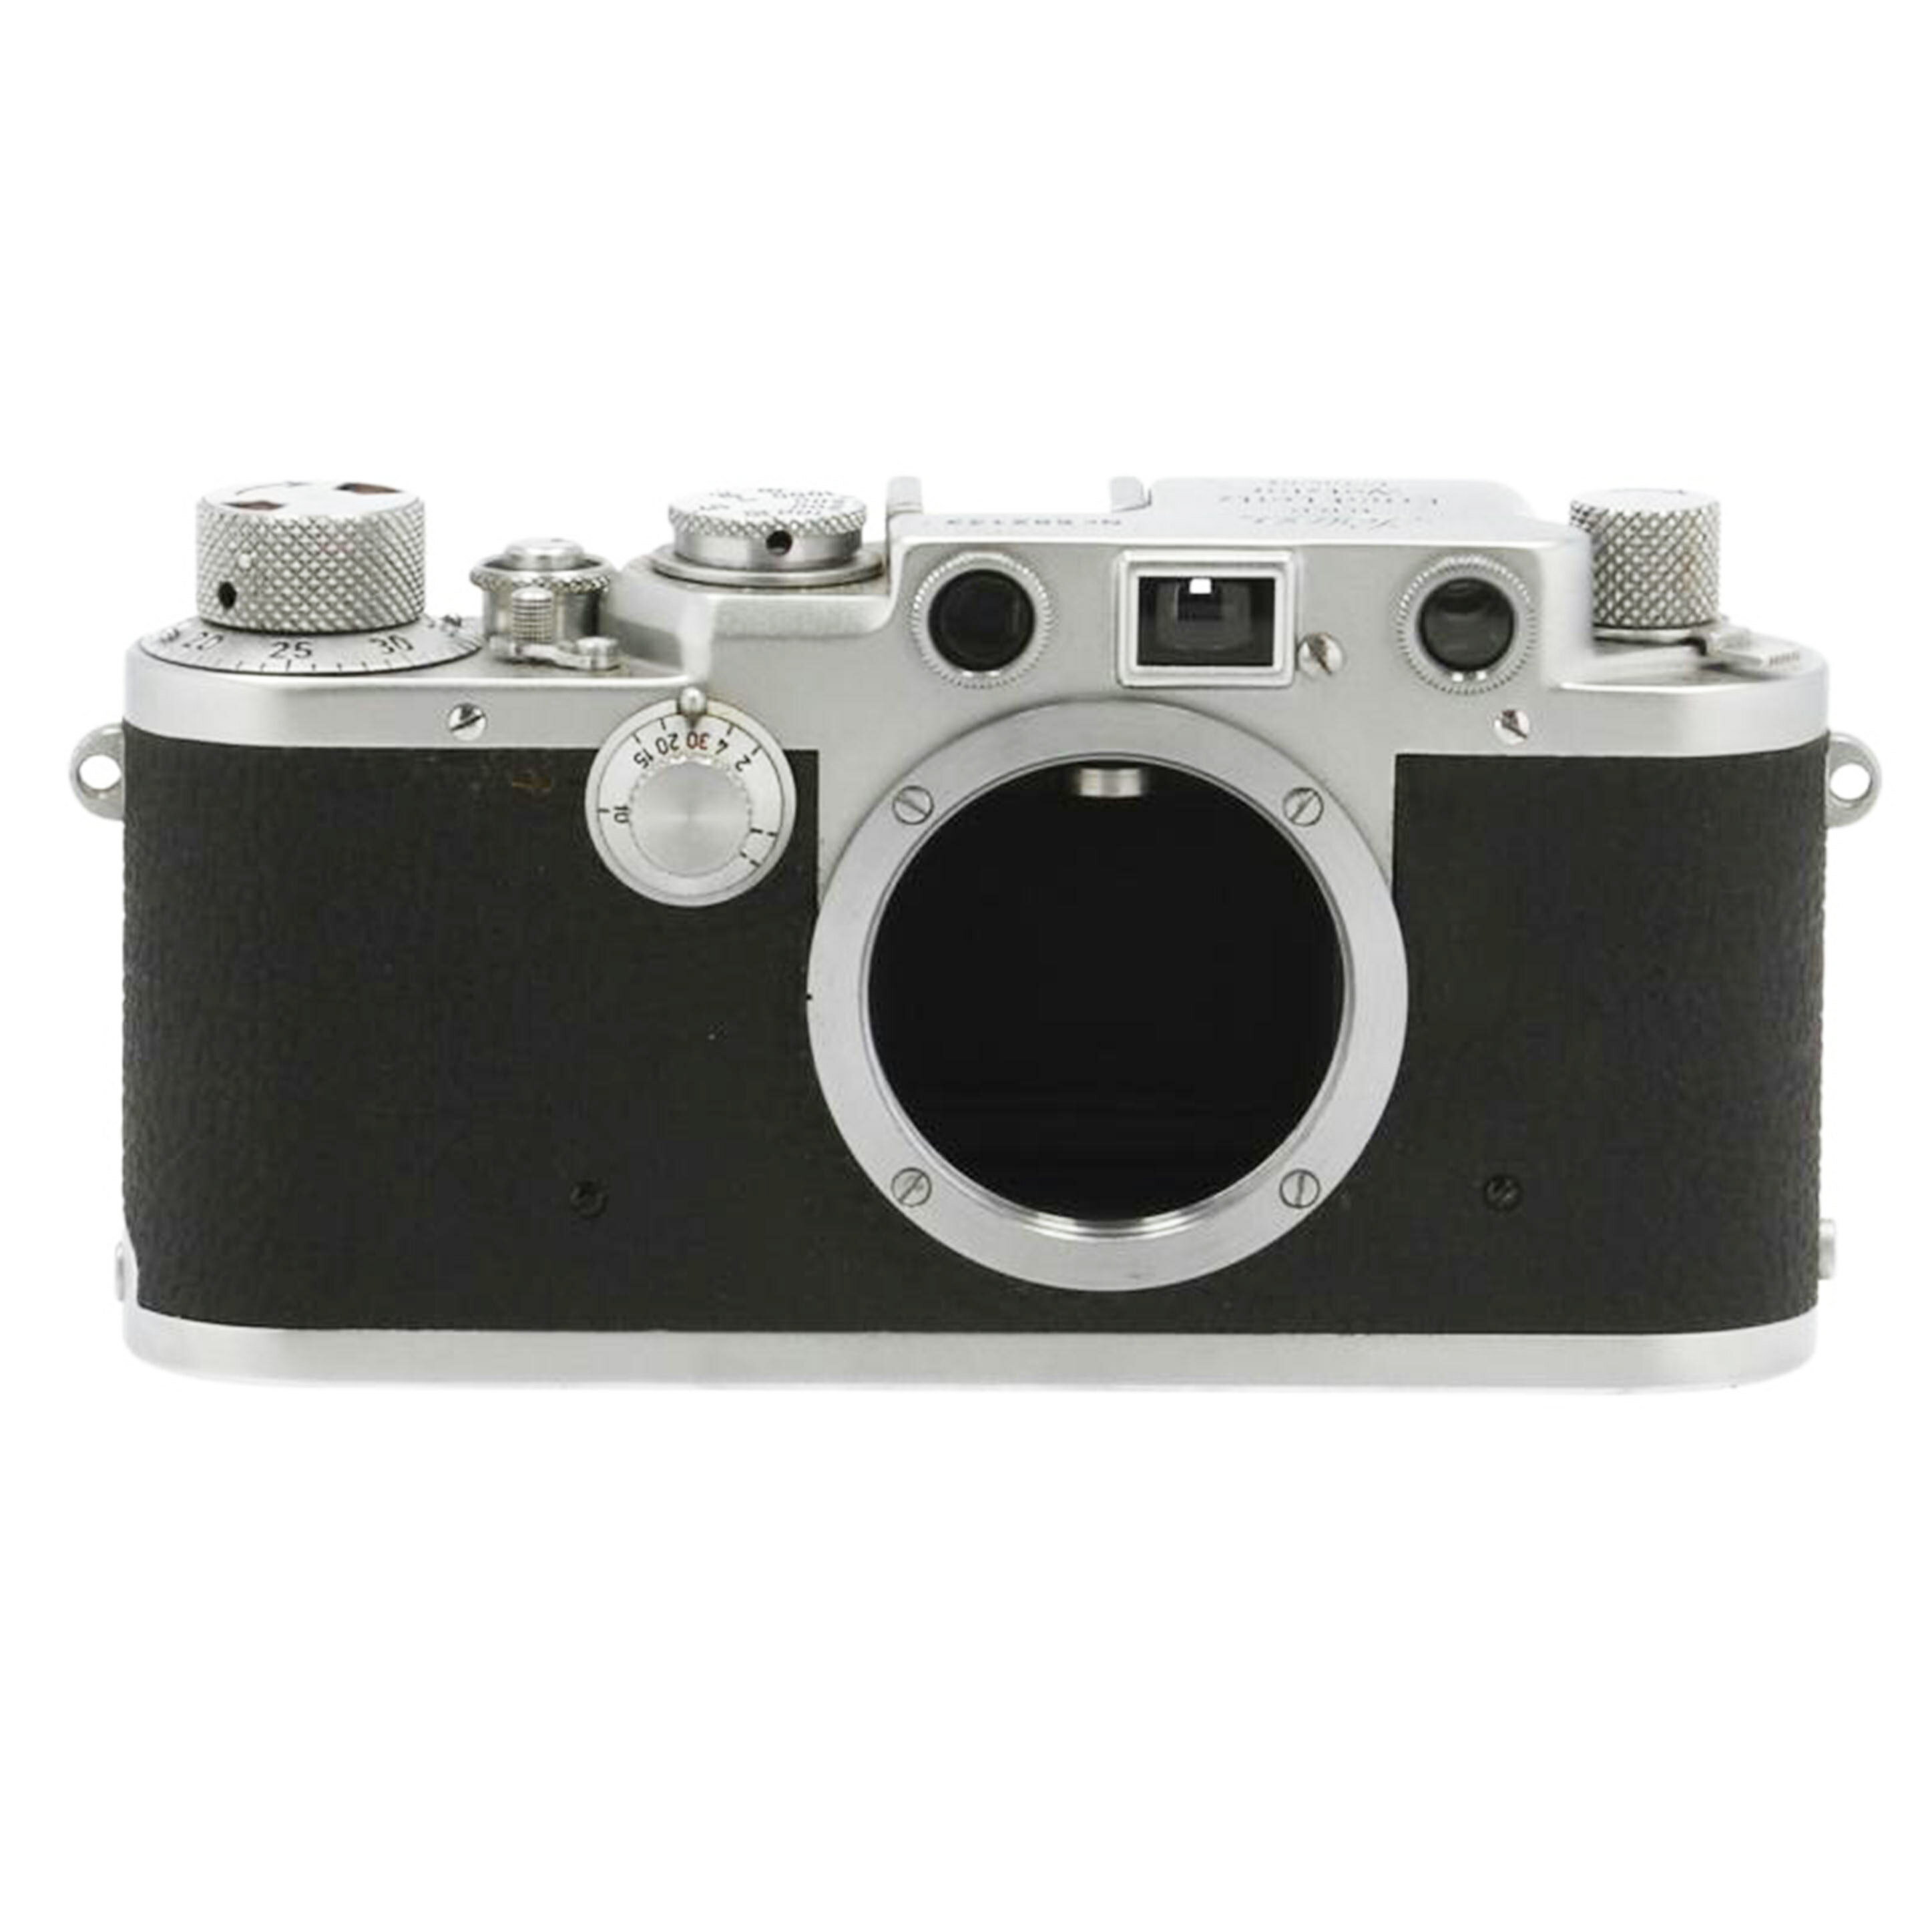 商品説明ブランドLeica商品名レンジファインダーカメラ型番III fシリアル/製造No602133状態ランクCランク/訳有品、劣化や破損など商品に欠陥がある状態です。（ご理解の上お買い求めください）付属品付属品の有無/有　内容は画像で確認ください。状態詳細1952年製造　Germany　外観はサビなどなく良好　ファインダー内部汚れ・濃いクモリあり　レザーケース付属(レンズカバー部分ちぎれています)商品についてこの商品は取手店で取り扱いをしております。商品の詳しい状態や情報については、店舗へお気軽にお問い合わせくださいませ。Leica ライカ/レンジファインダーカメラ/III f/602133カメラ関連/Cランクこのカテゴリから探す「カメラ」このアイテムから探す「カメラ関連」